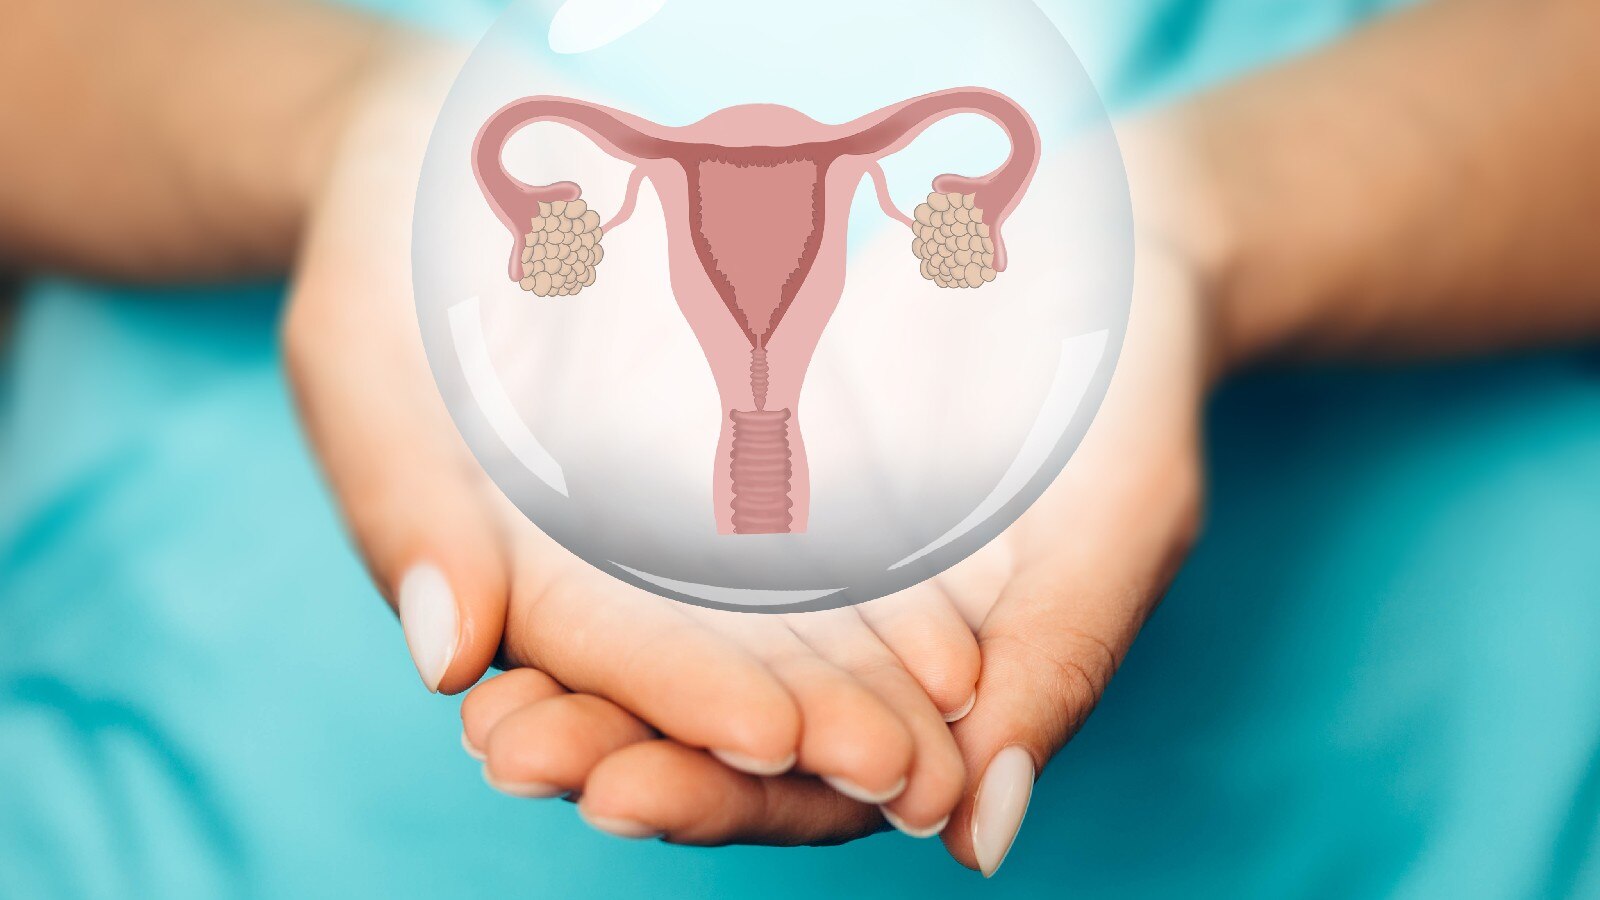 गर्भाशय आगे को बढ़ाव: दर्दनाक संभोग और कब्ज के कारण भी गर्भाशय योनि से बाहर निकल सकता है।